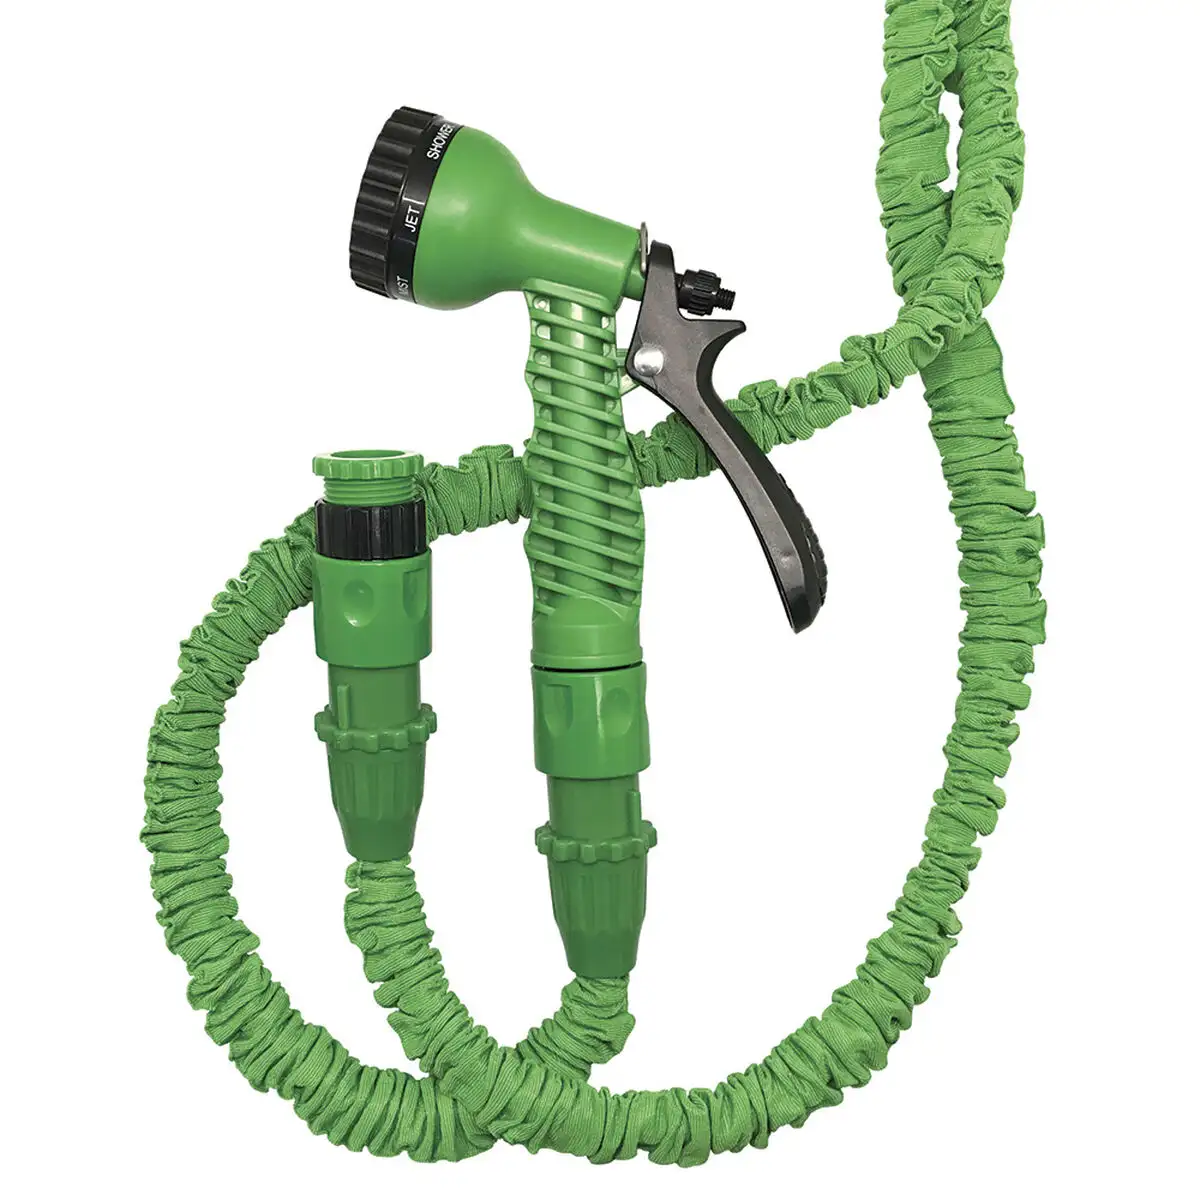 Tuyau d arrosage aqua control xpansy hose basic 1 2 3 4 22 5 m _6404. DIAYTAR SENEGAL - Où Choisir est un Plaisir. Explorez notre boutique en ligne et choisissez parmi des produits de qualité qui satisferont vos besoins et vos goûts.